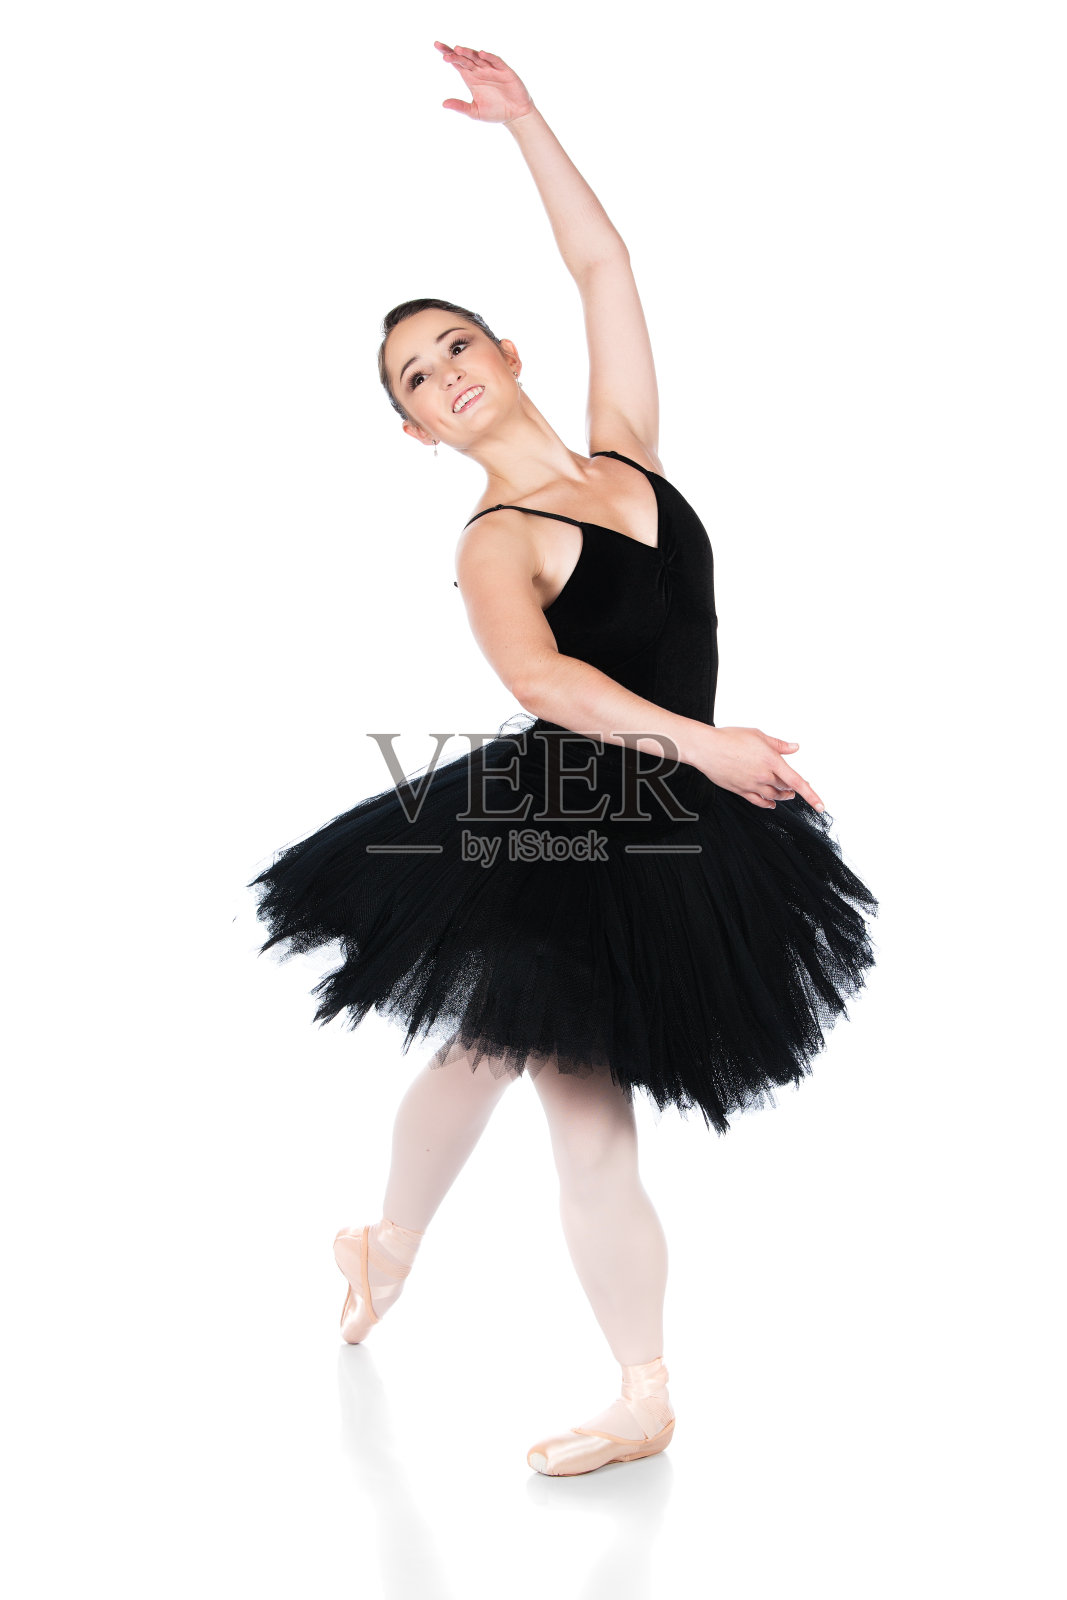 女芭蕾舞演员照片摄影图片